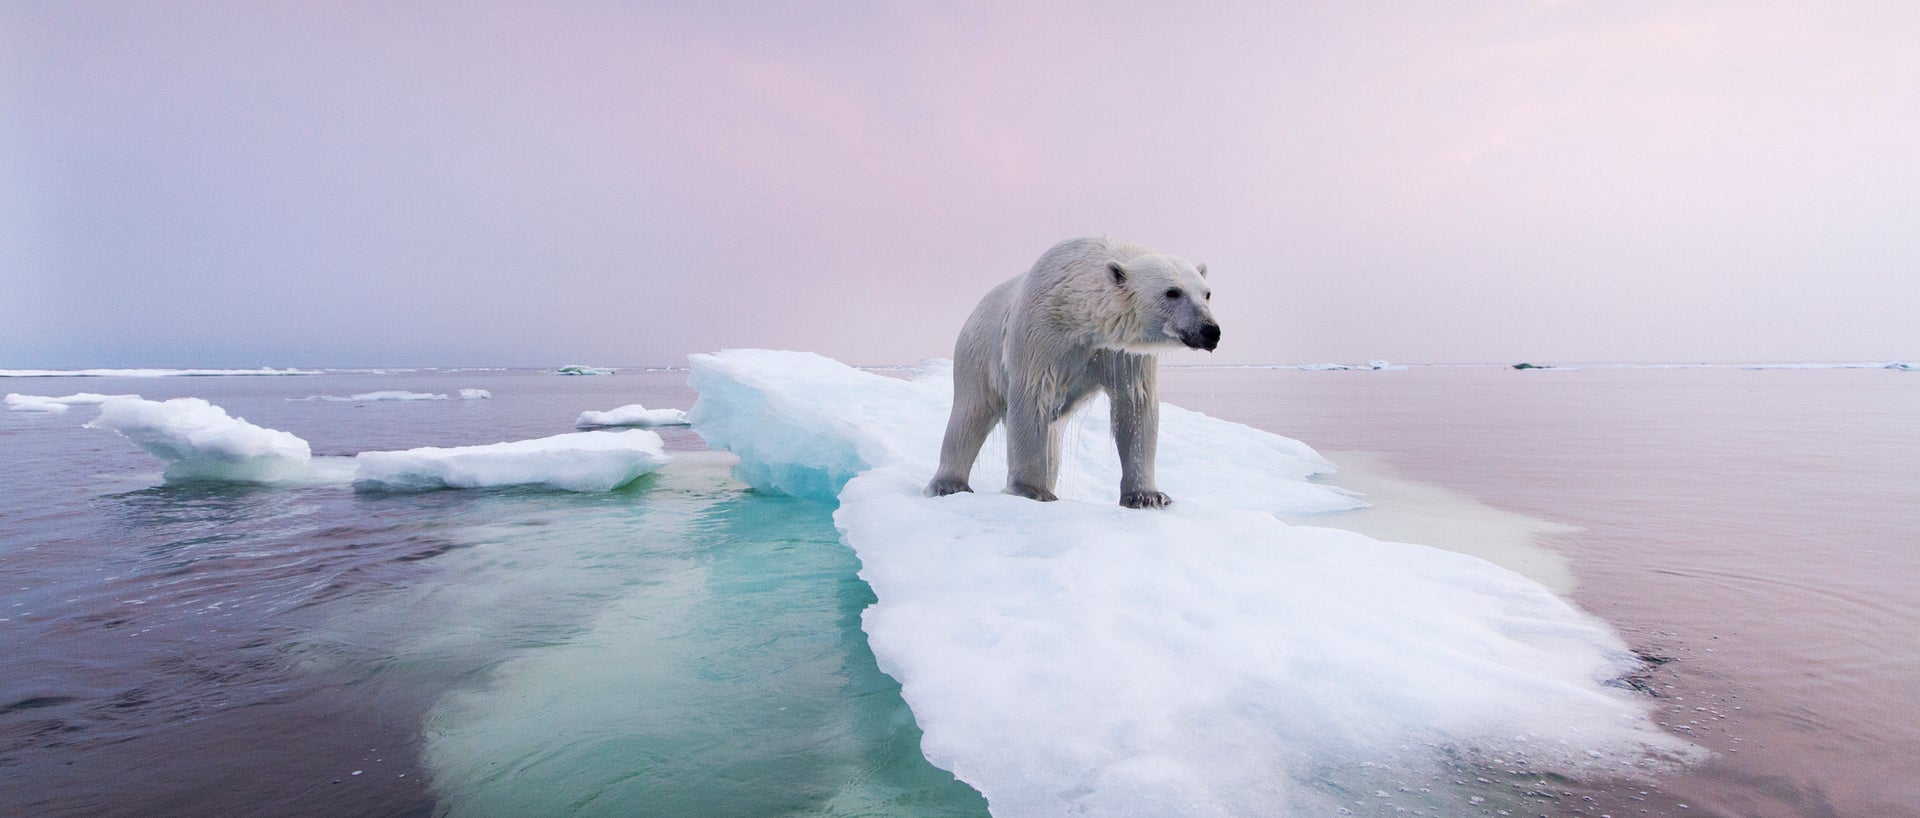 Polar bear on ice chunk 